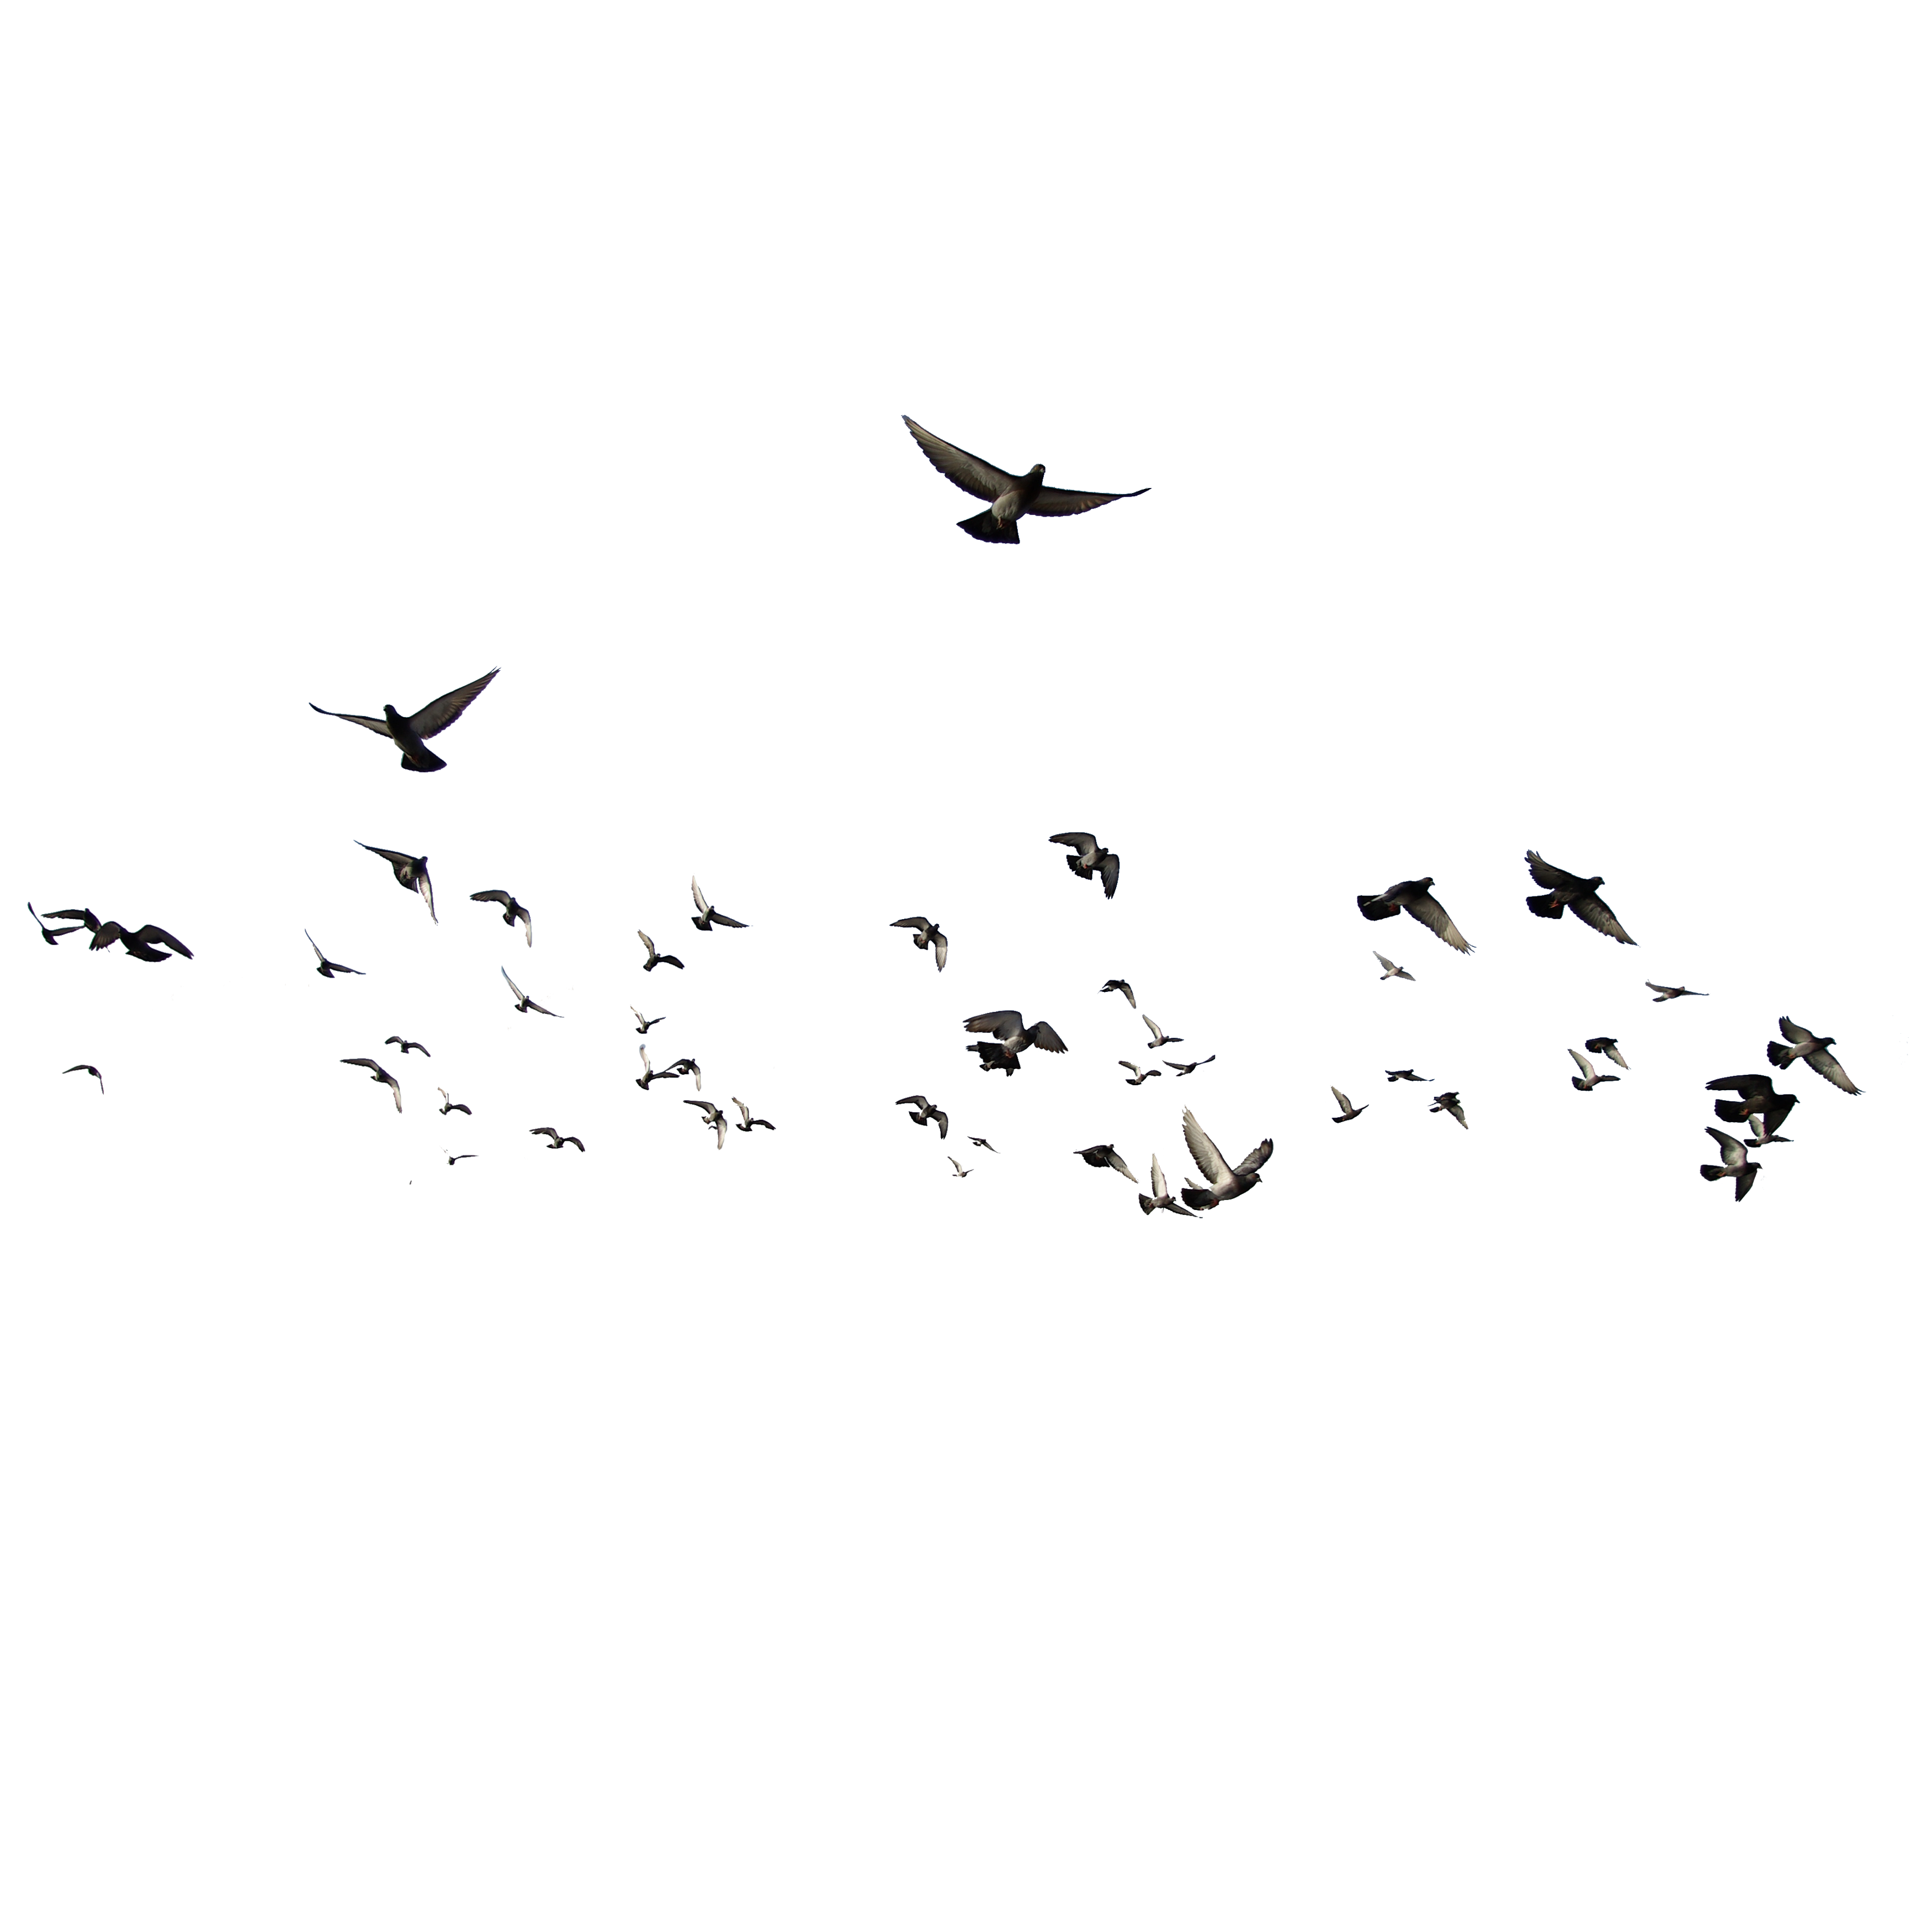 Uccelli PNG Immagine Trasparente